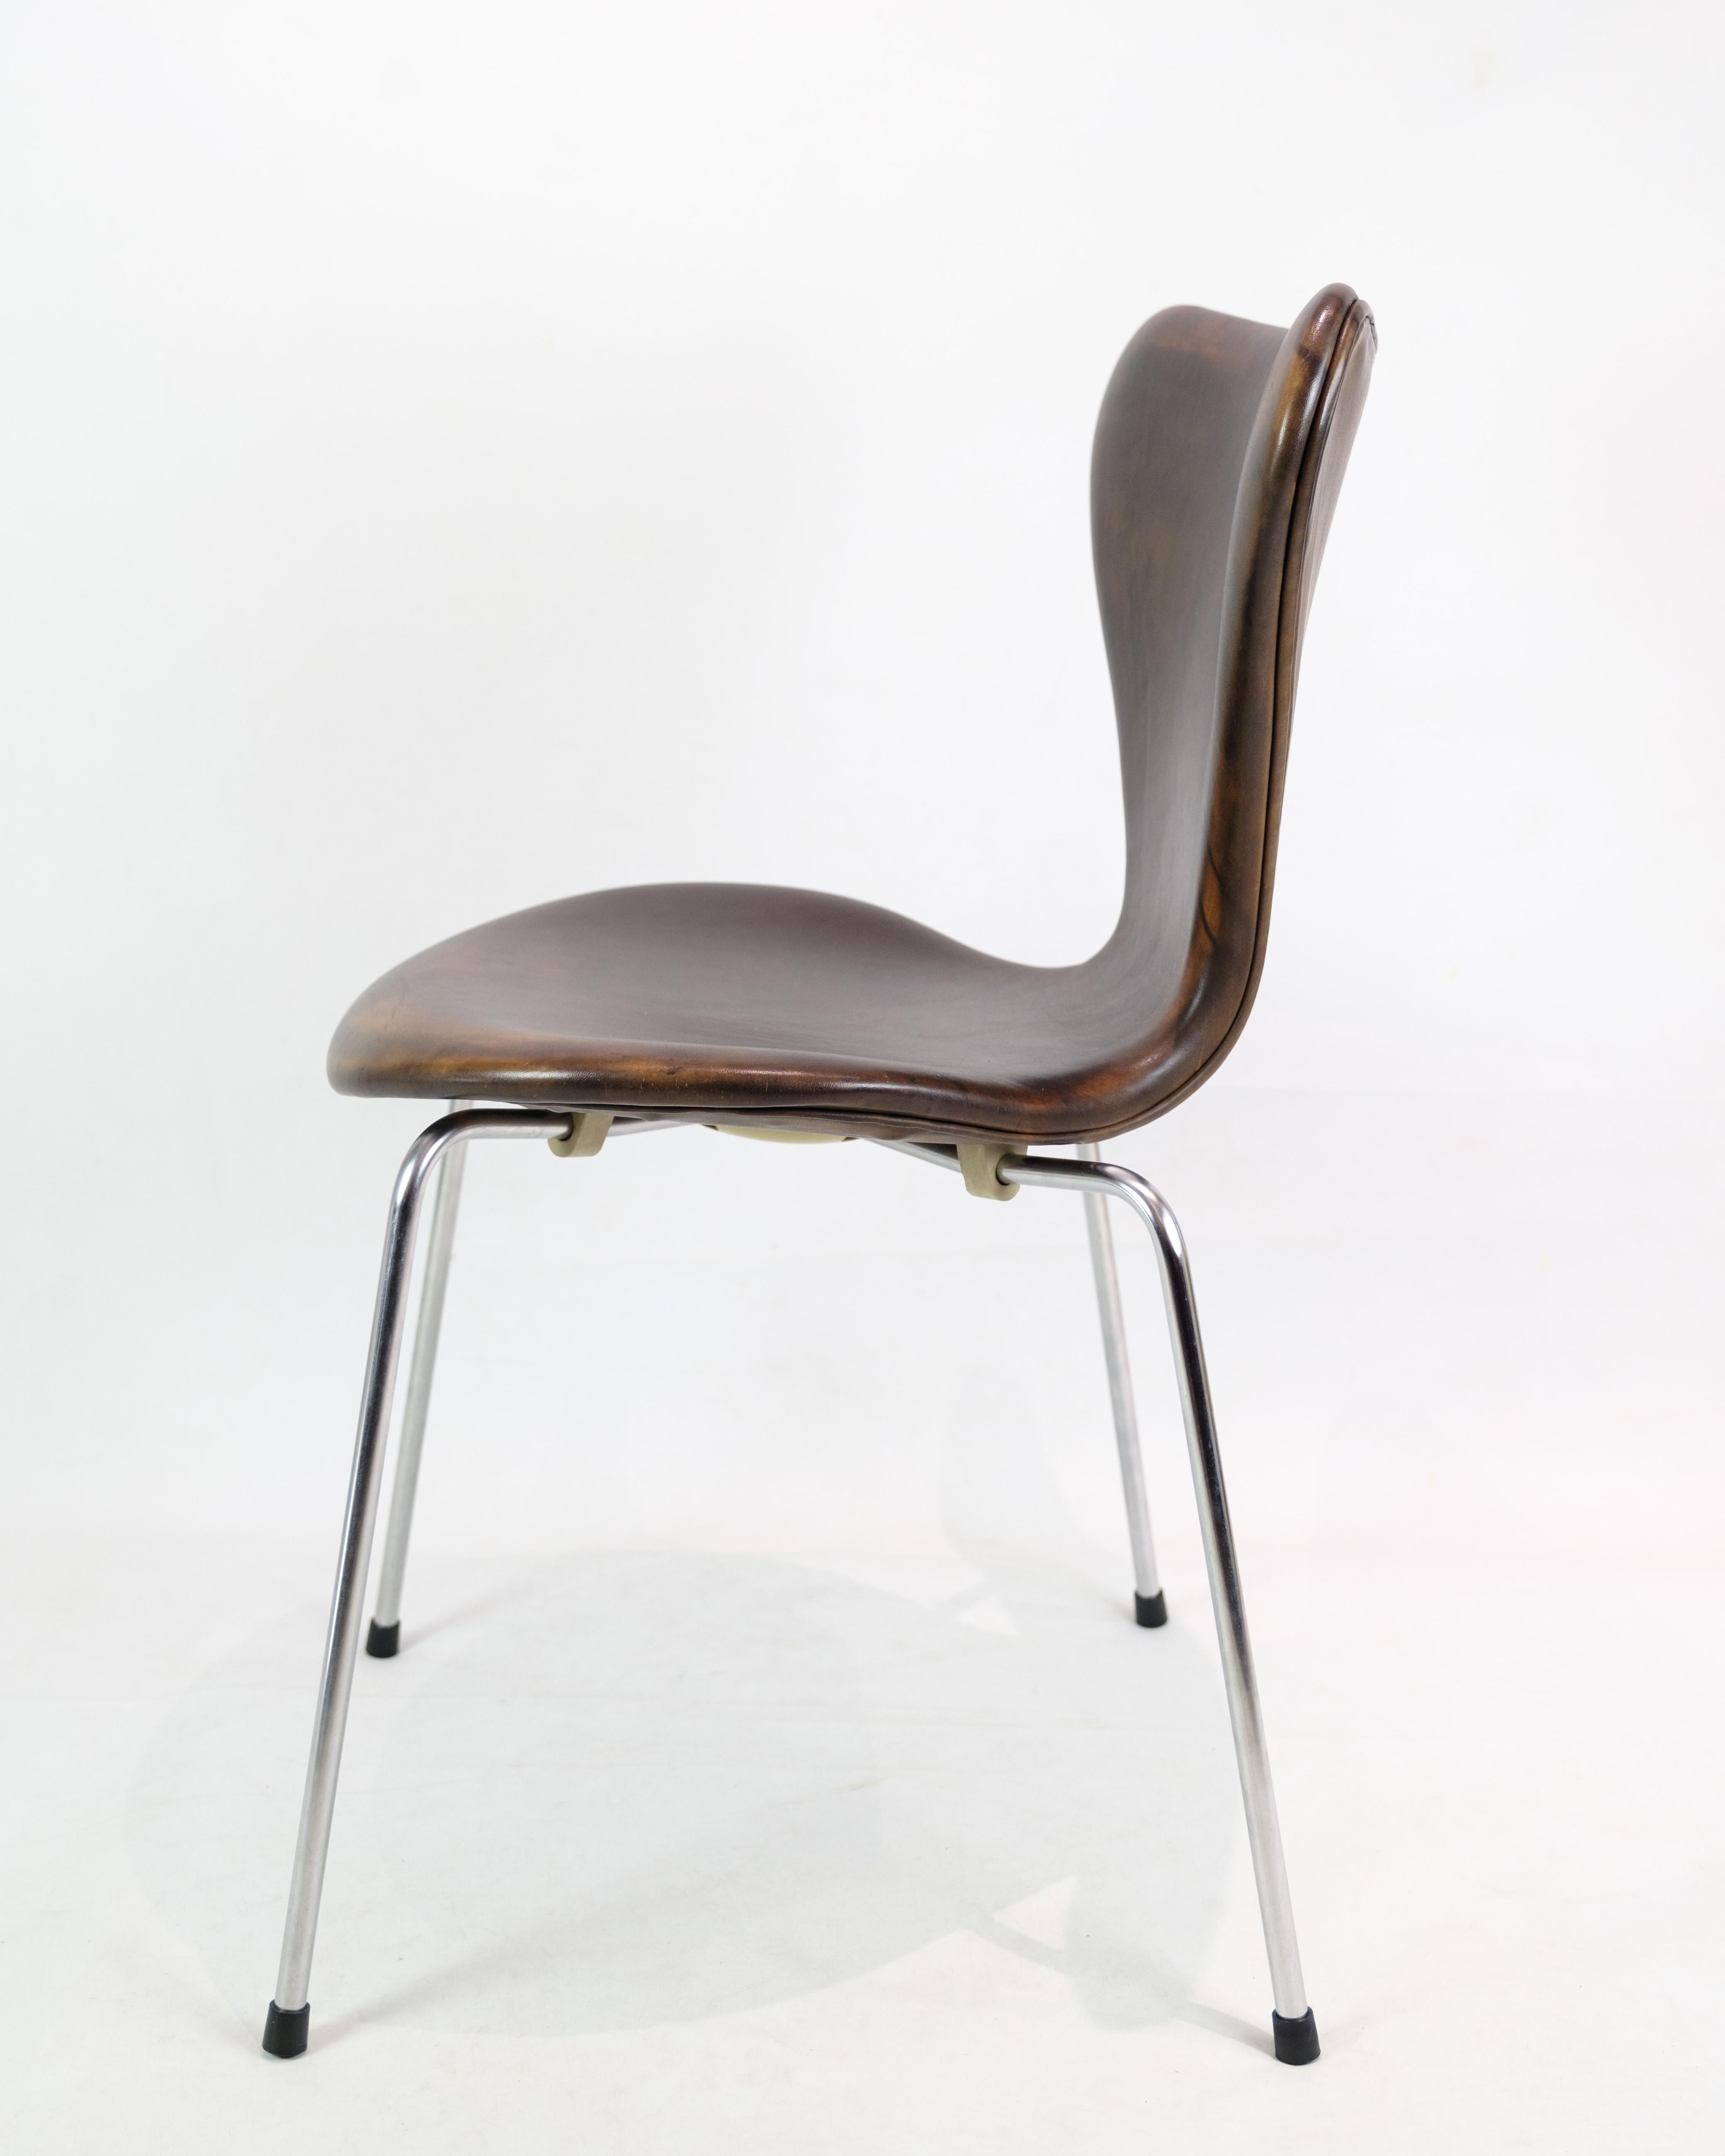 Ensemble exquis de 6 chaises modèle 3107 d'Arne Jacobsen, fabriquées par Fritz Hansen : un témoignage de design intemporel et d'élégance durable. Ces chaises emblématiques, conçues par Arne Jacobsen et minutieusement fabriquées par Fritz Hansen,